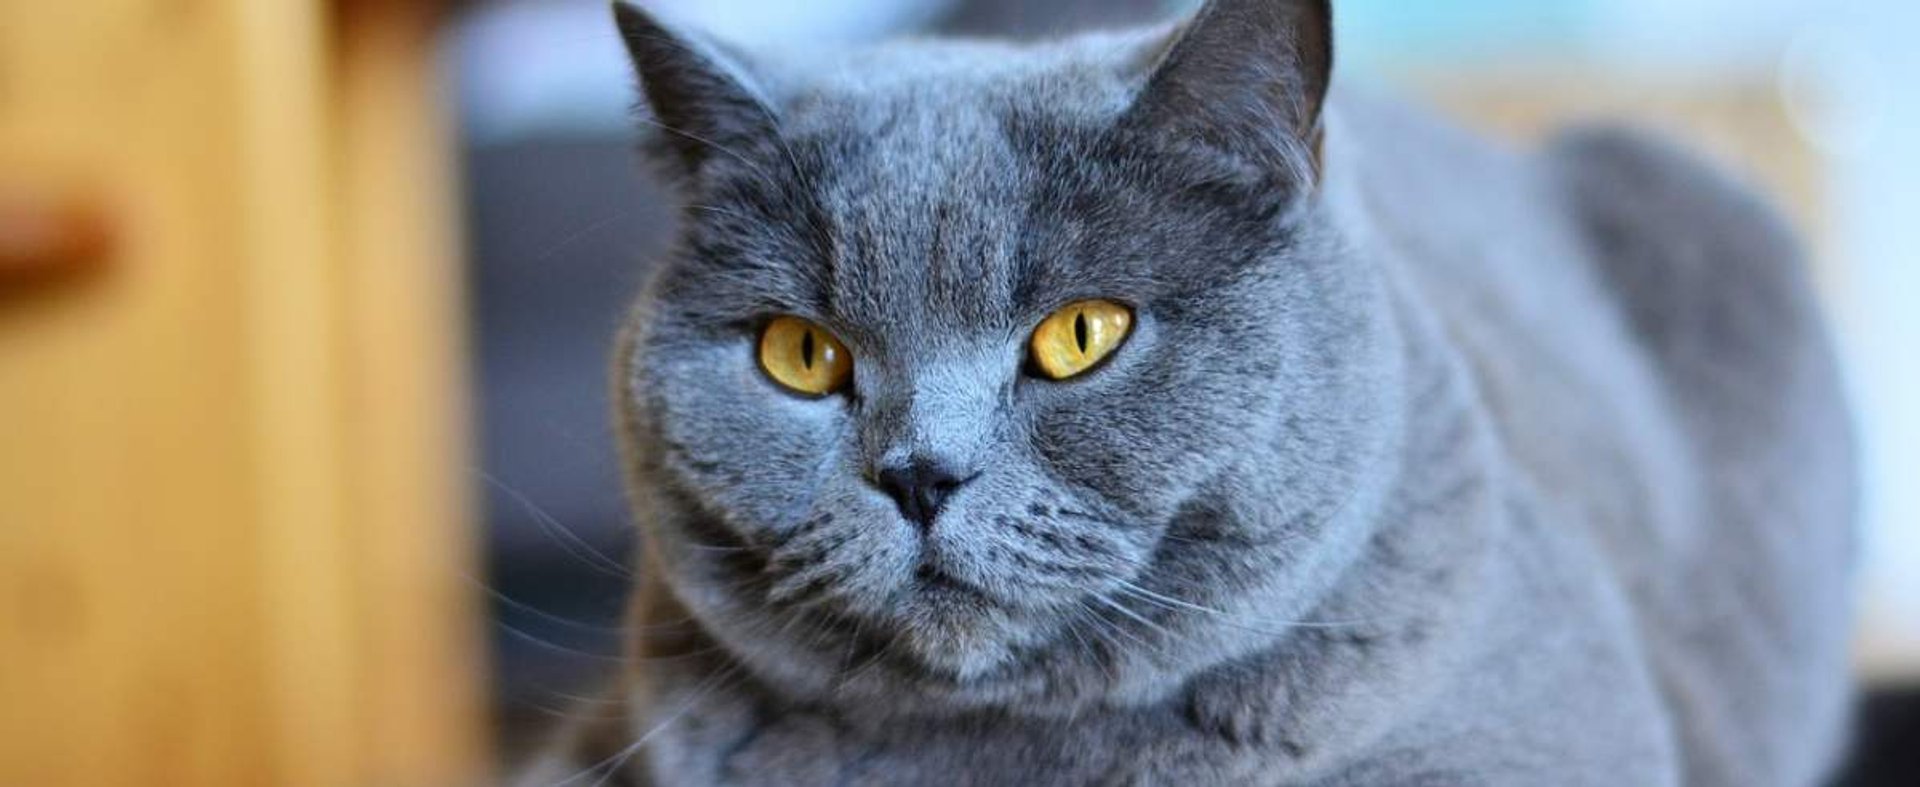 Kot kartuski – niebieski kot z przepięknymi oczami